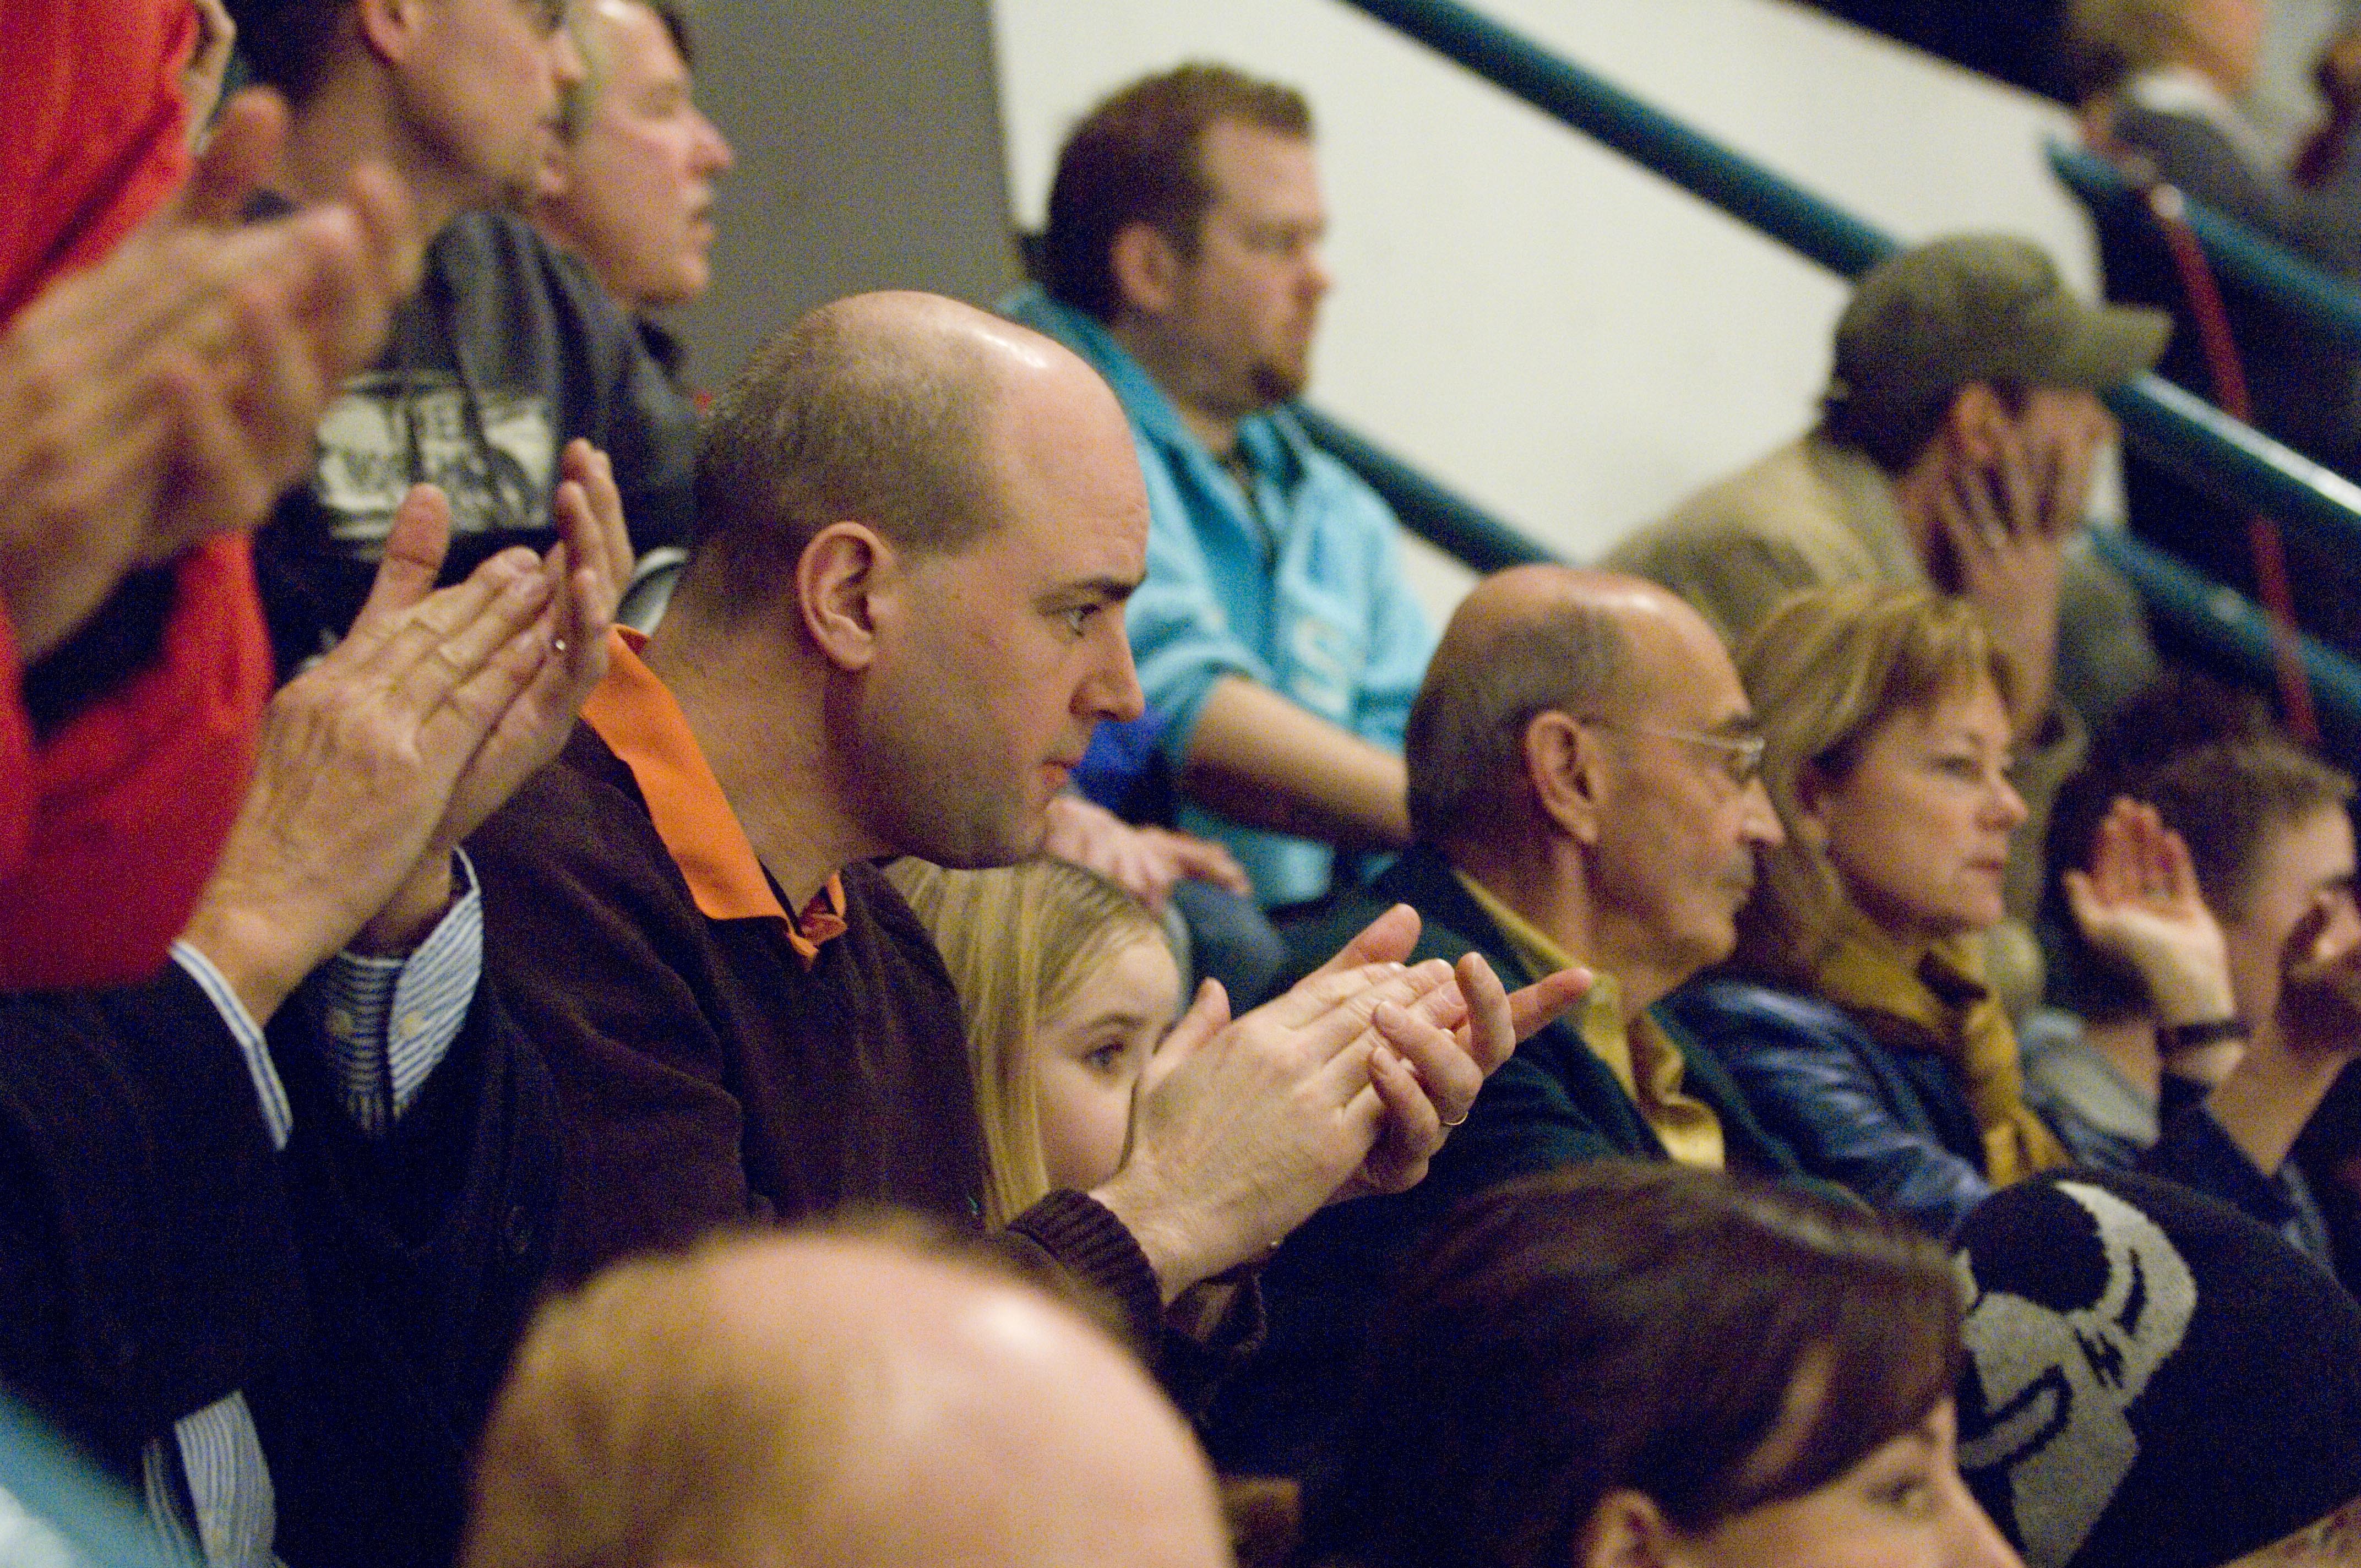 Statsminister Fredrik Reinfeldt på en djurgårdsmatch 2007. I bakgrunden, Lena Adelsohn-Liljeroth med maken Ulf Adelsohn.